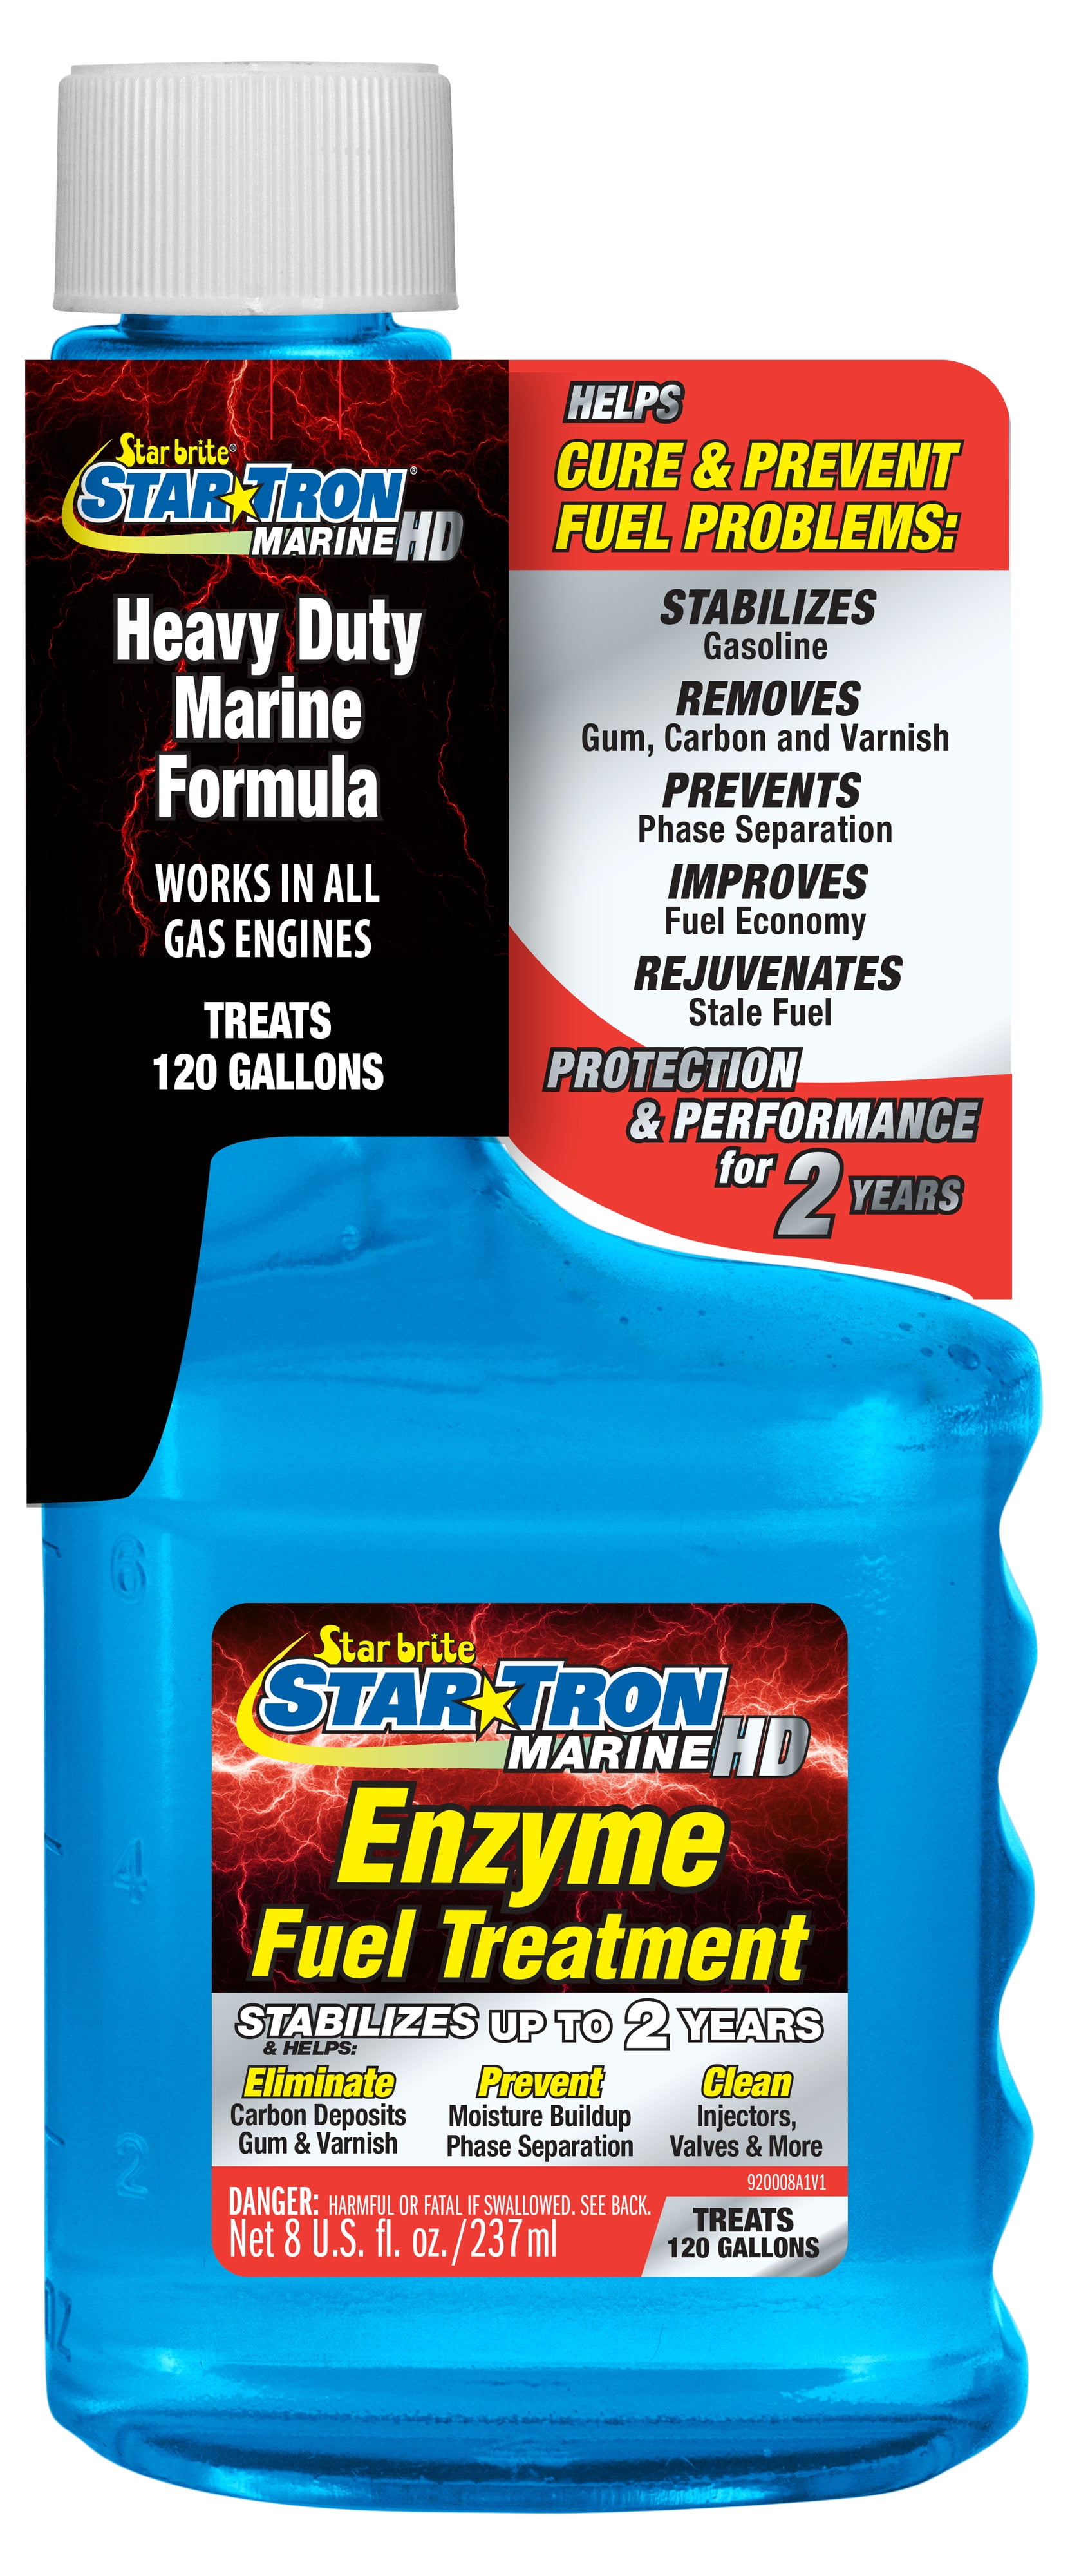 Star Brite Star Tron Marine HD - Enzyme Fuel Treatment - 8oz